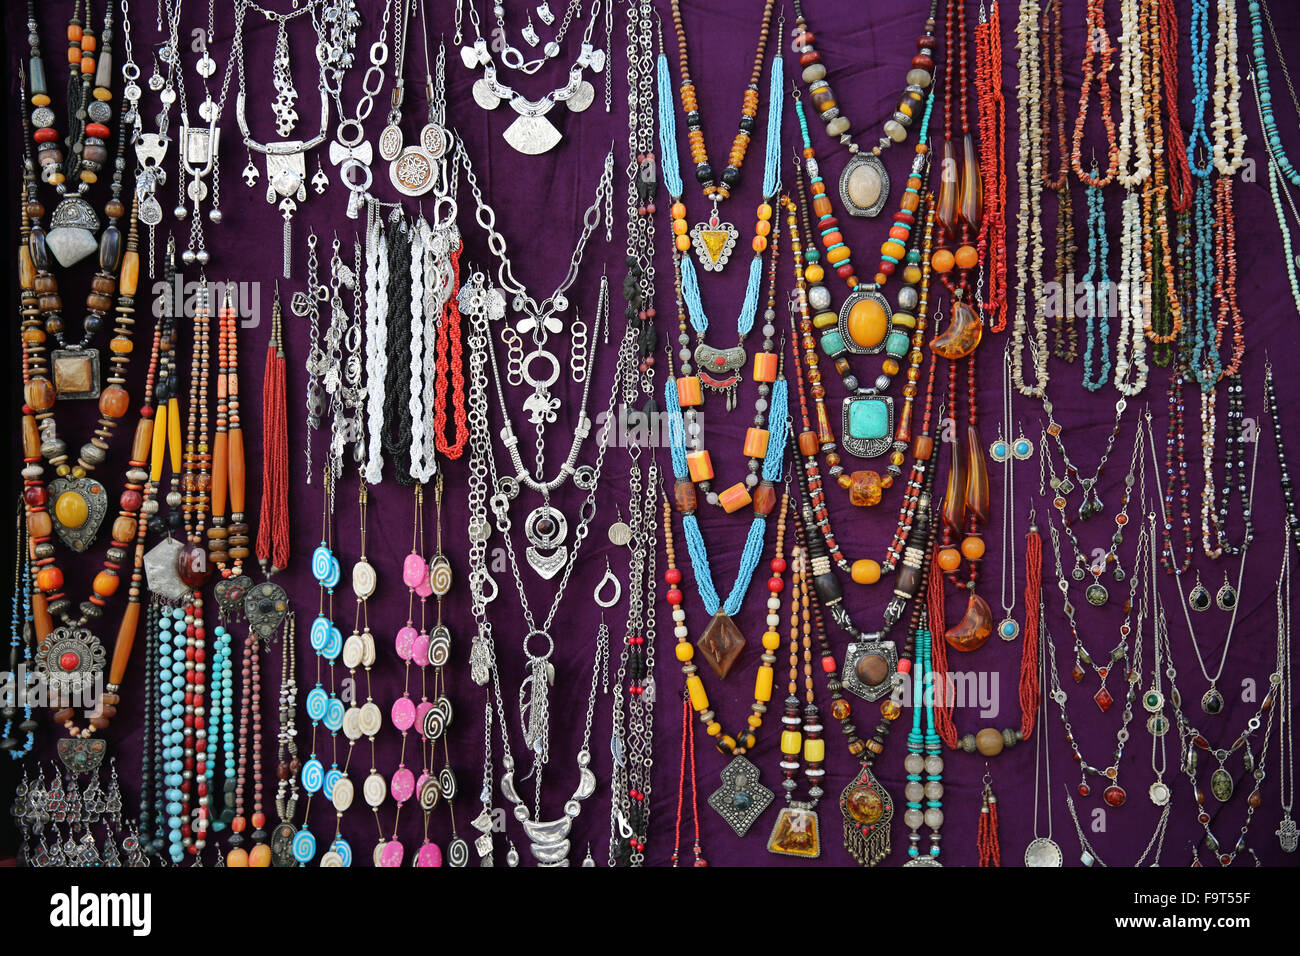 Jewelry sold in Sidi Bou Said. Stock Photo